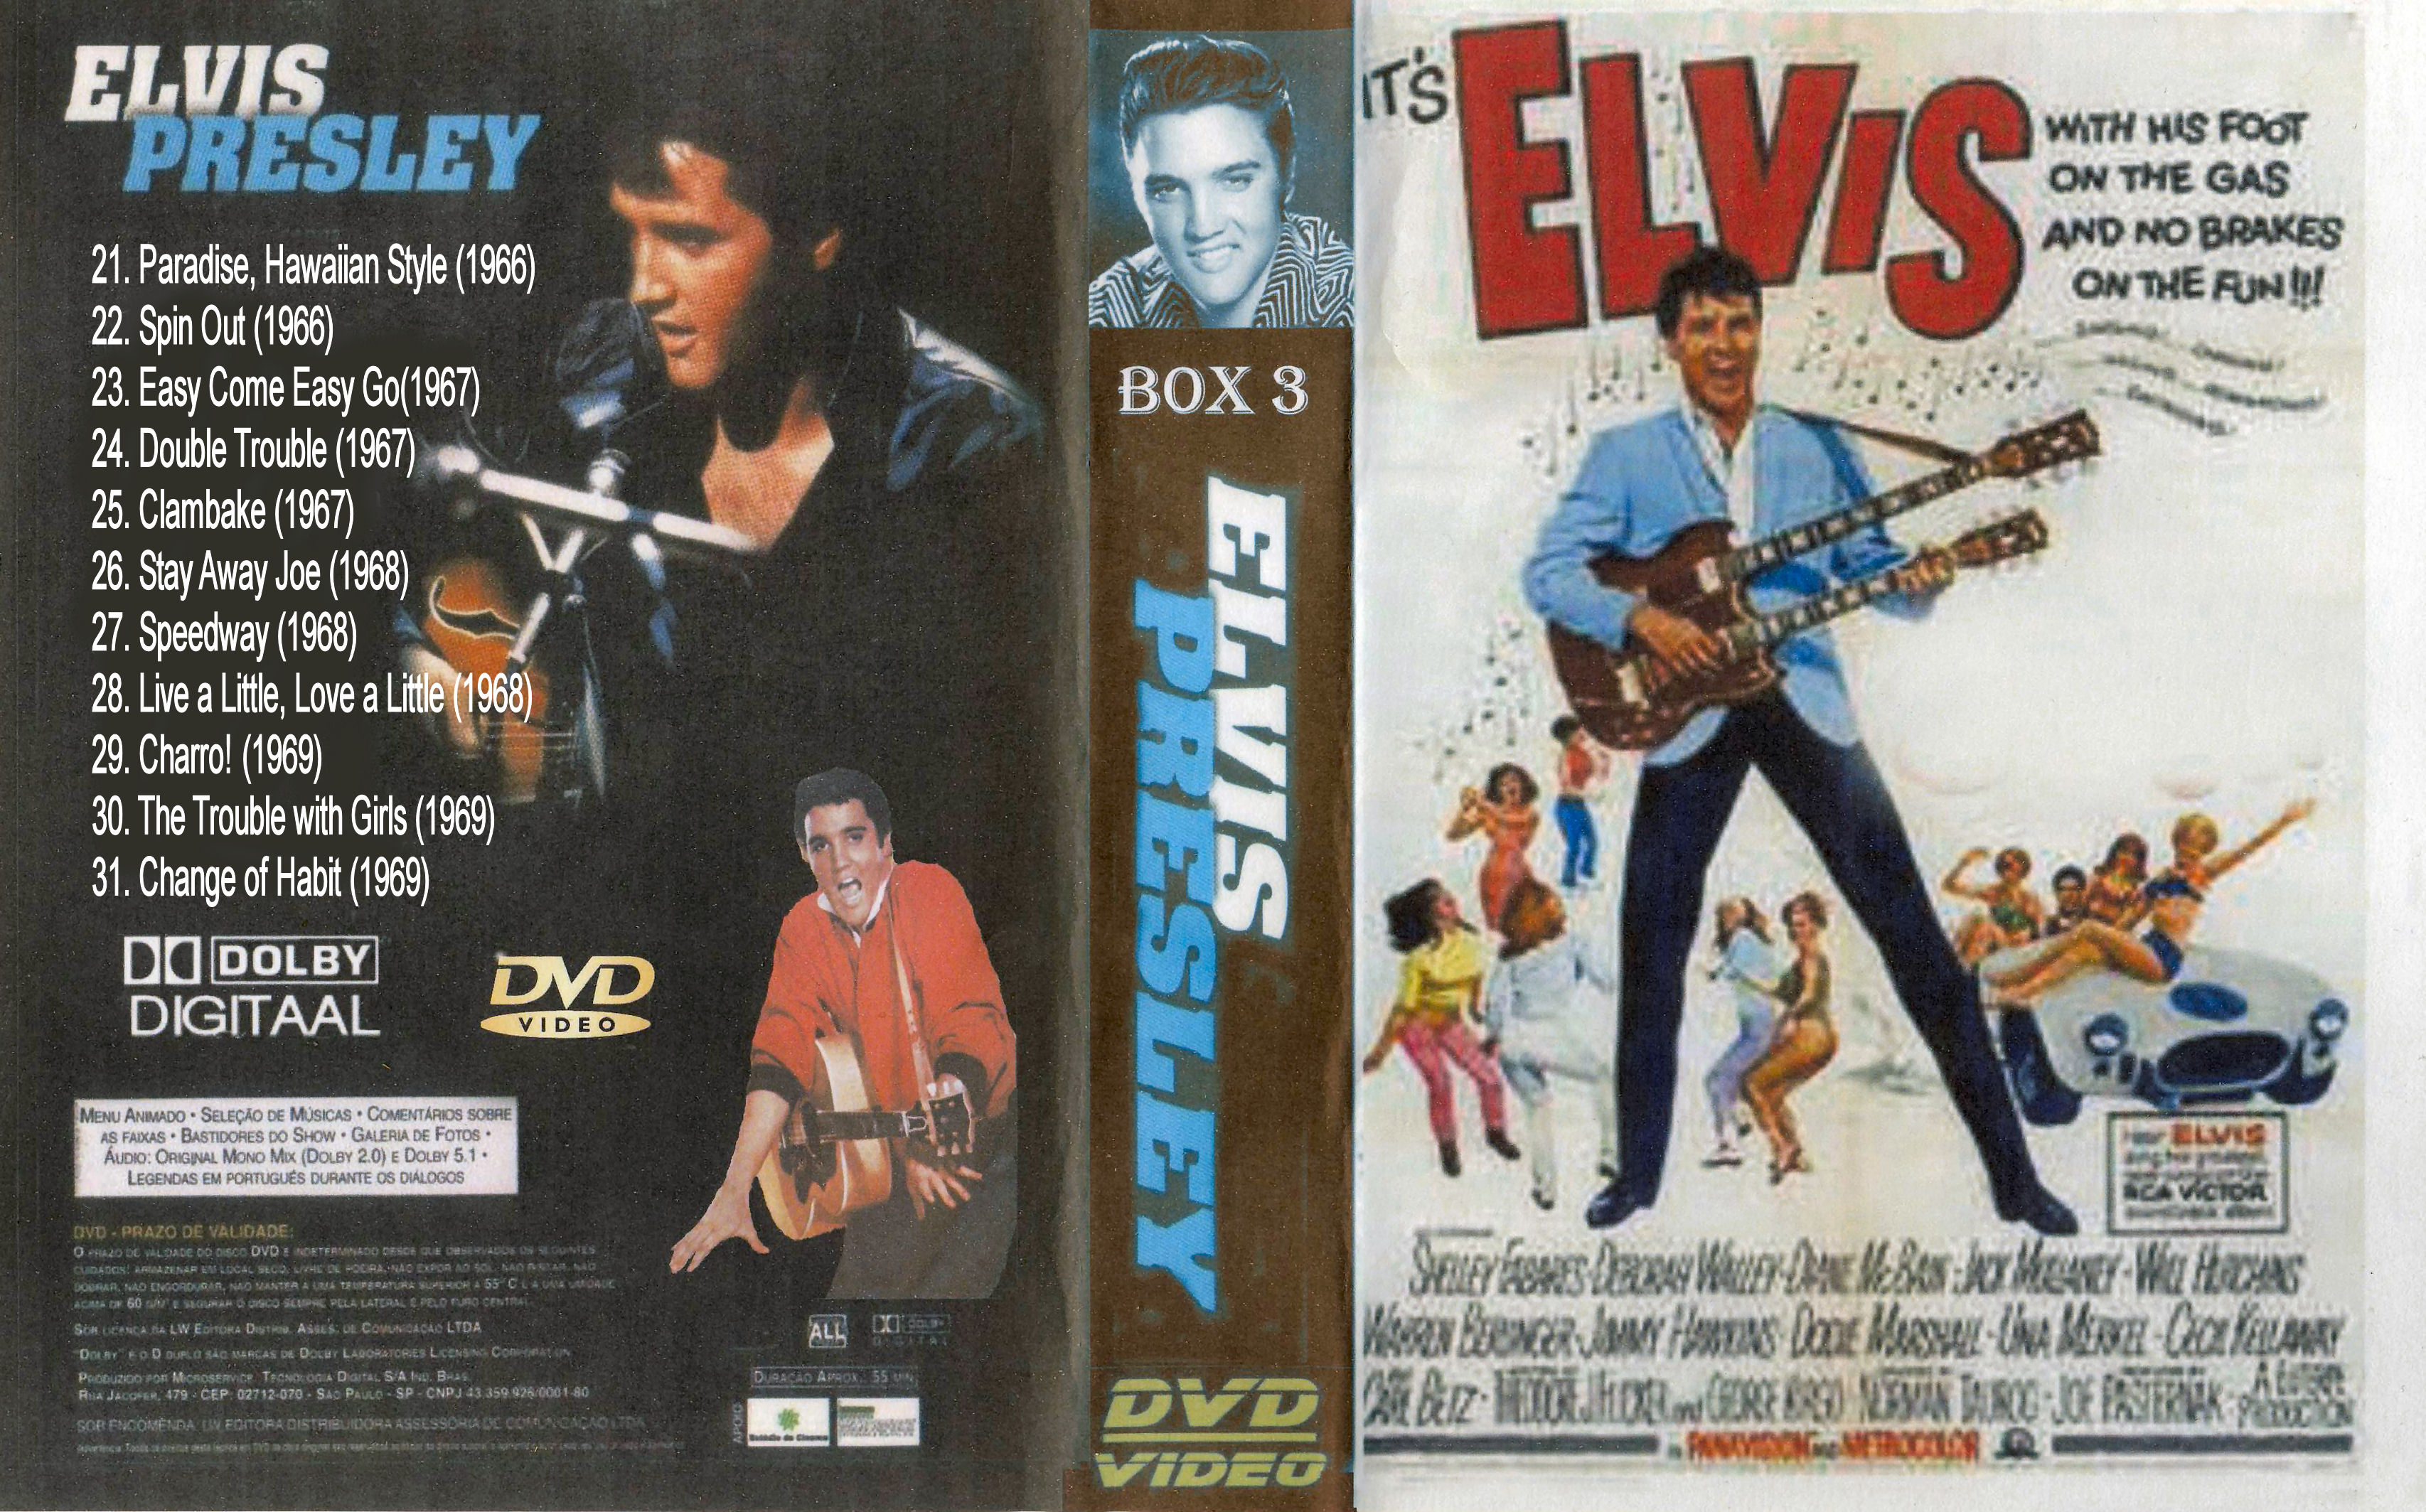 Elvis Presley Collectie ( 26. Stay Away Joe (1968) DvD 26 van 31